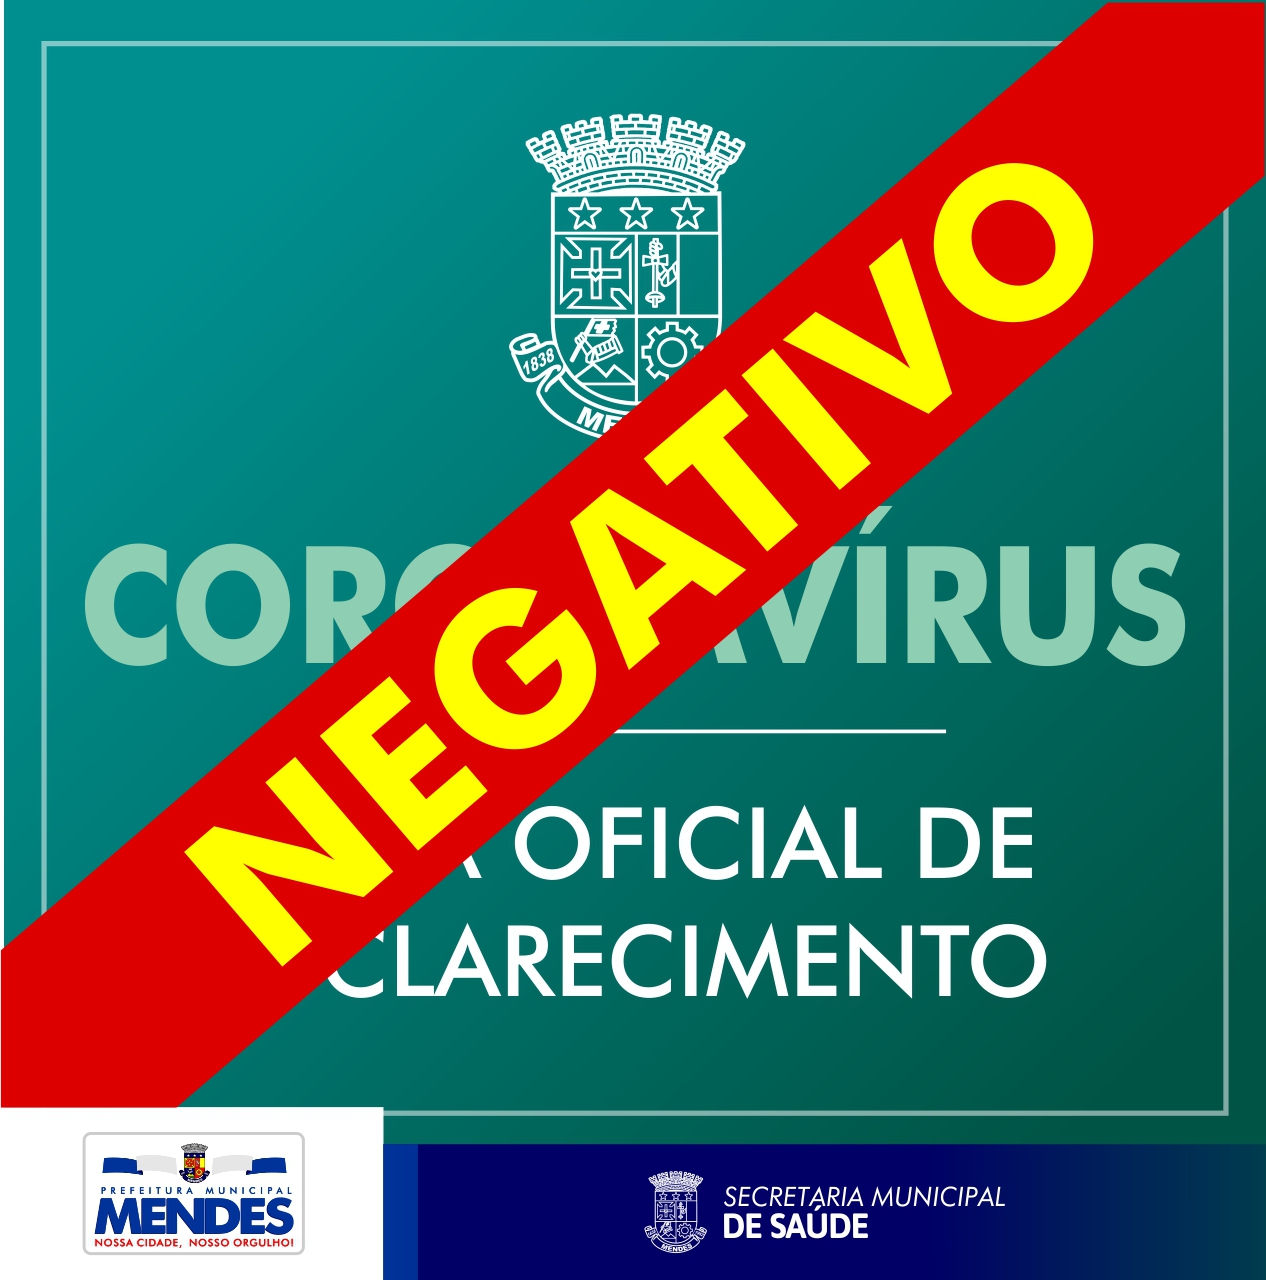 2020_-_coronavirus_negativo.jpg